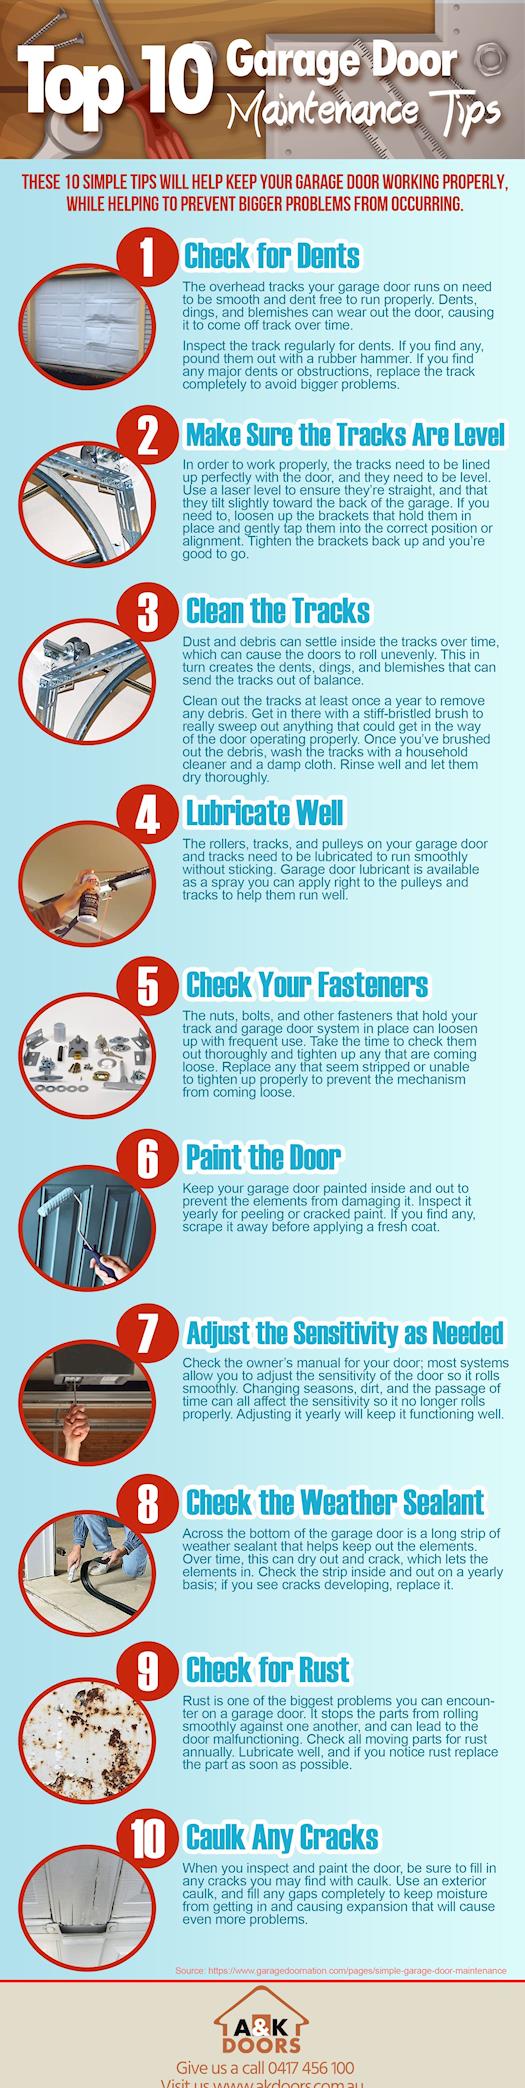 Top 10 Garage Door Maintenance Tips